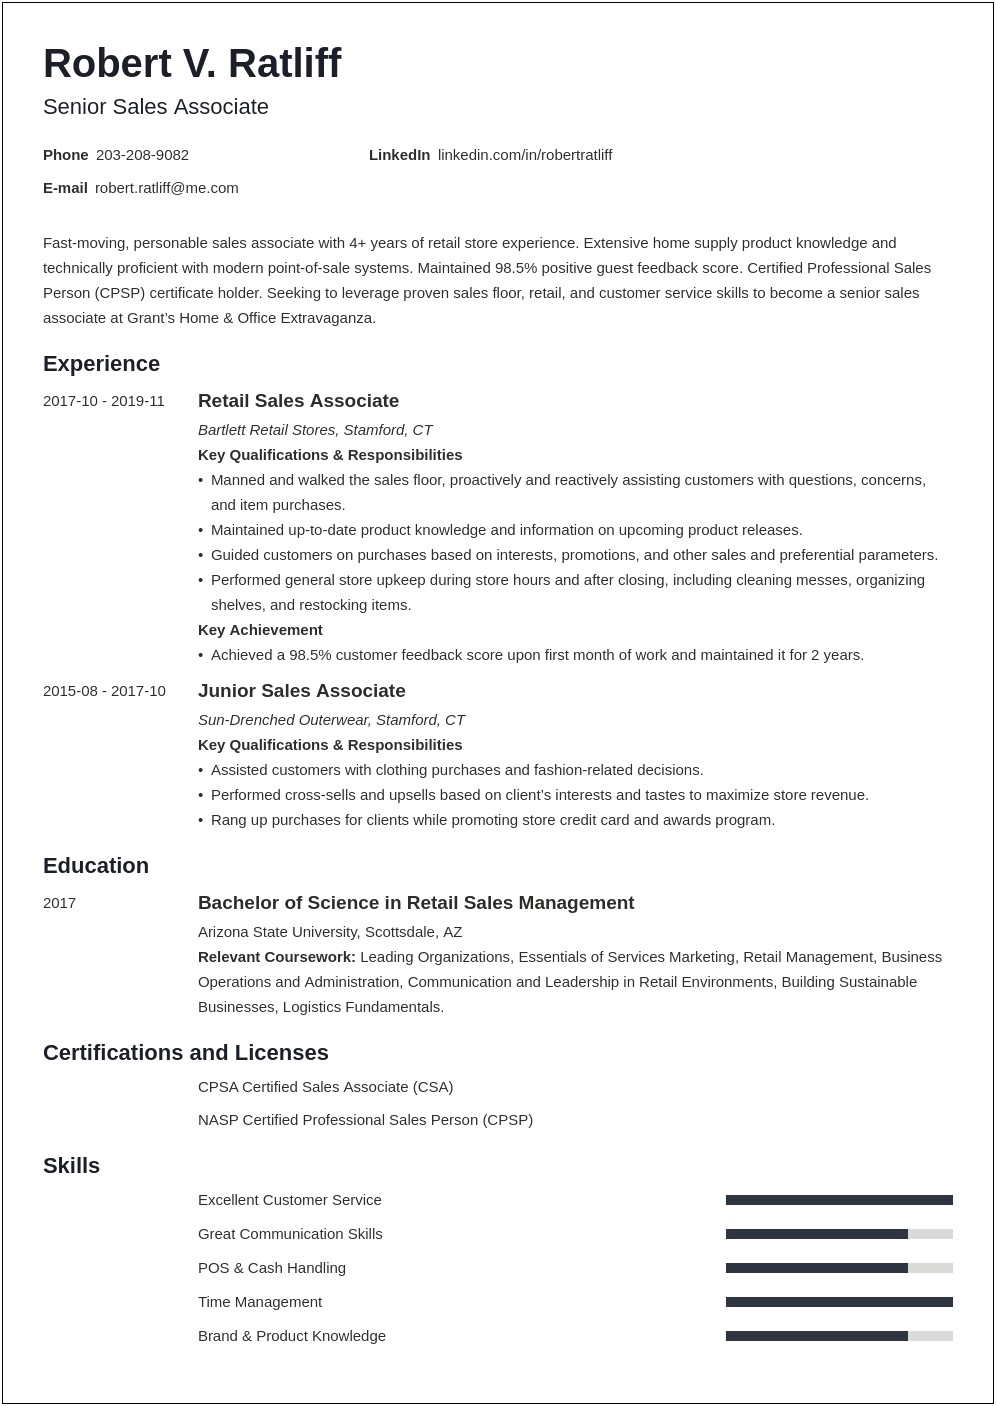 Resume Sample For Associate Development Job